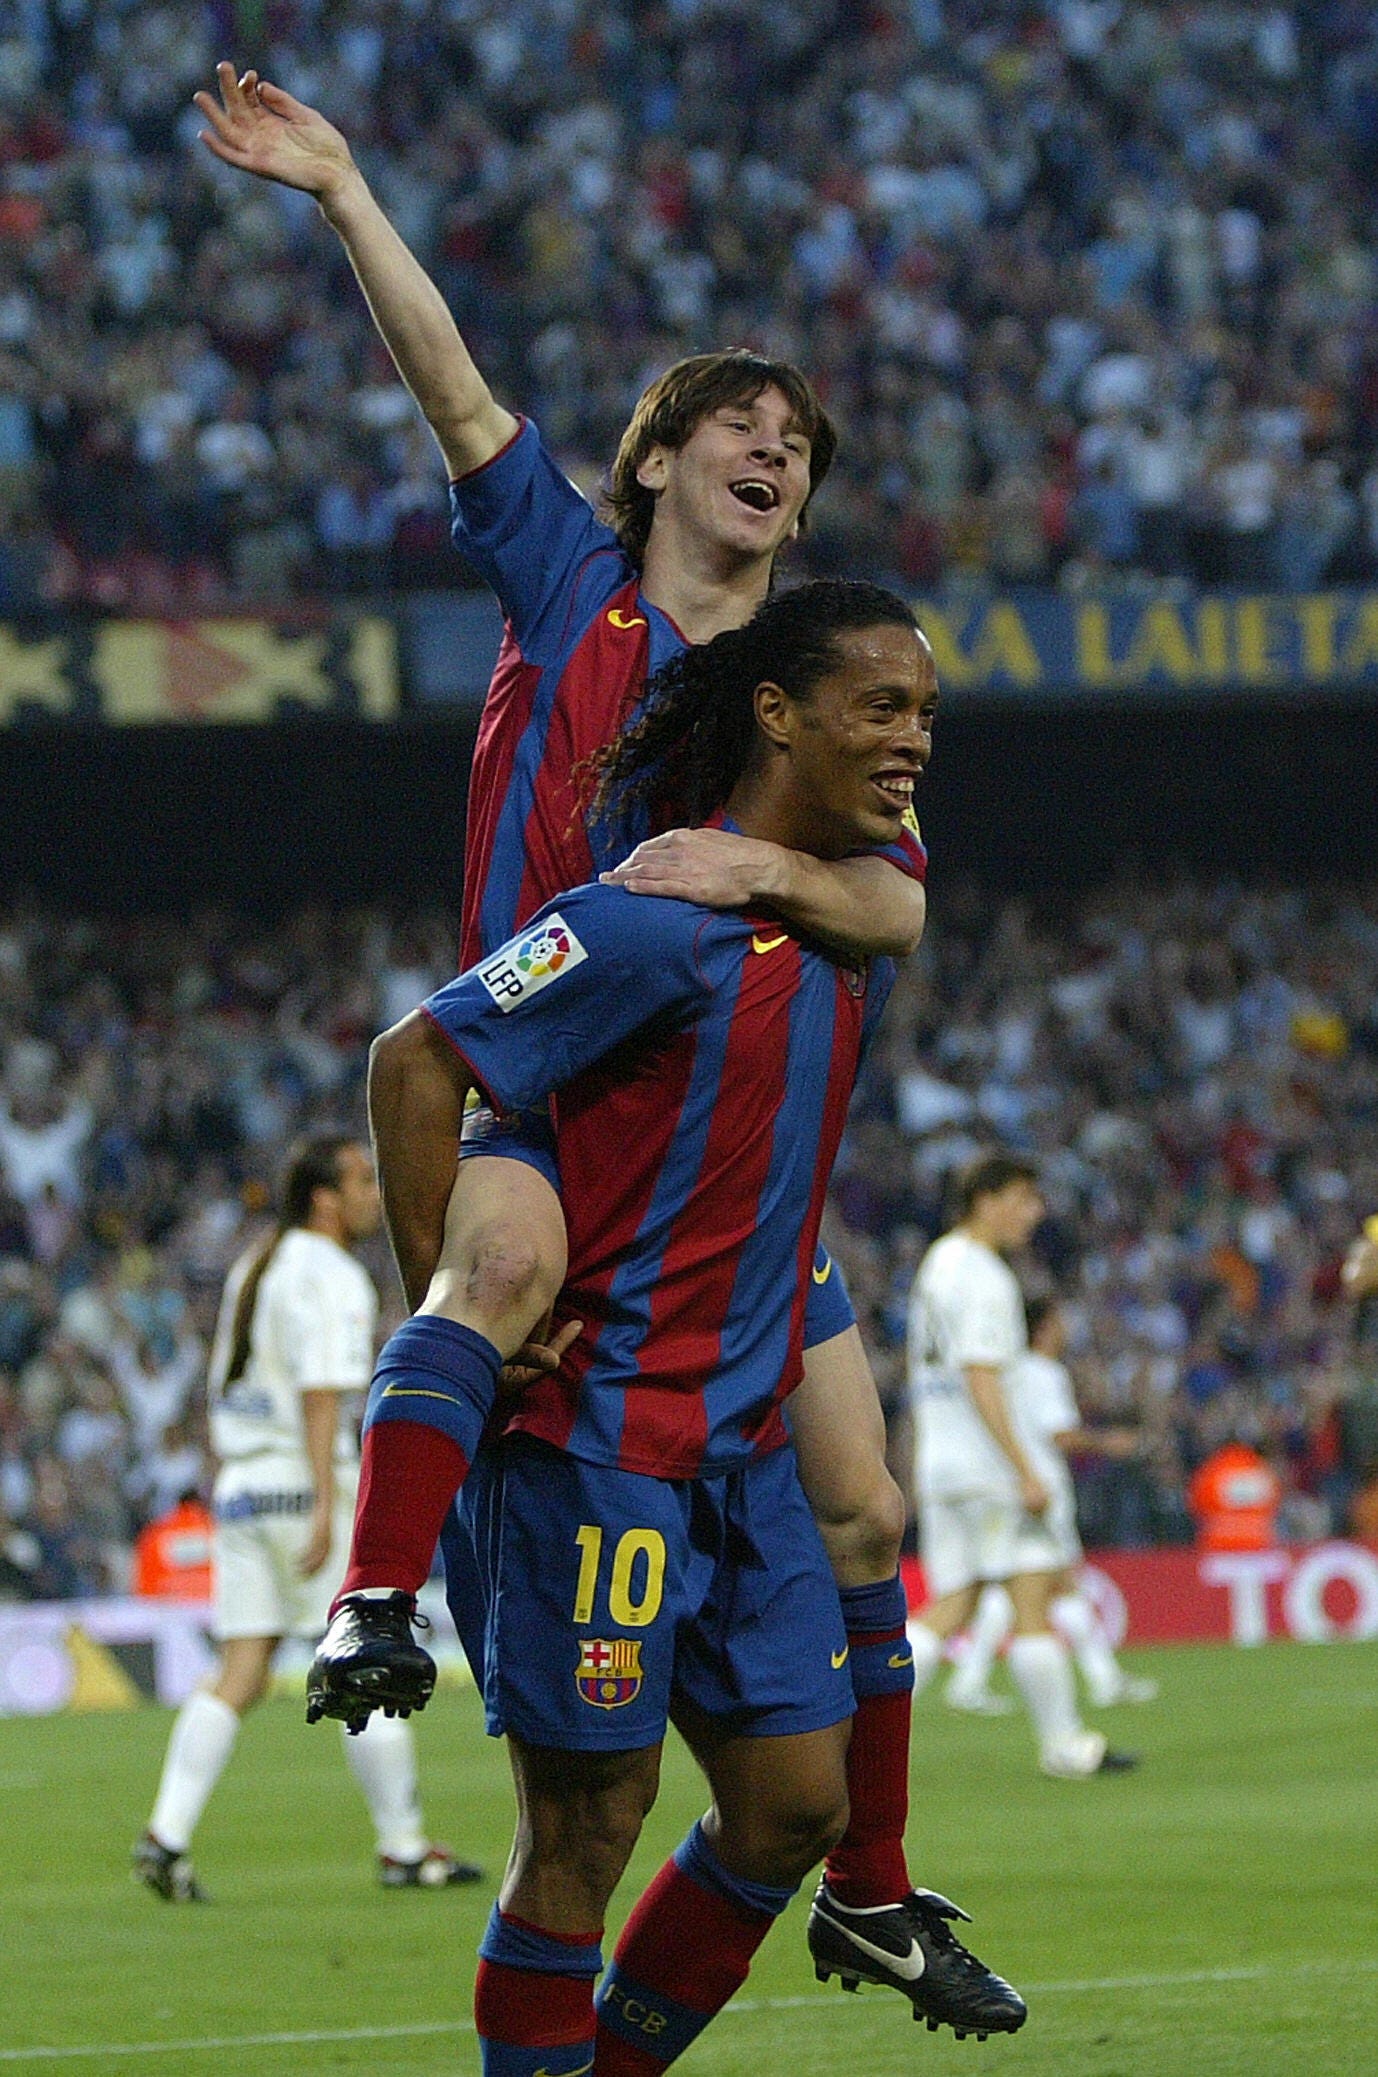 Xem hình ảnh đầy cảm xúc về mối quan hệ anh em giữa Messi và anh trai Rodrigo. Chúng tôi sẽ cho bạn thấy những khoảnh khắc đáng yêu và đầy ý nghĩa hơn bao giờ hết.